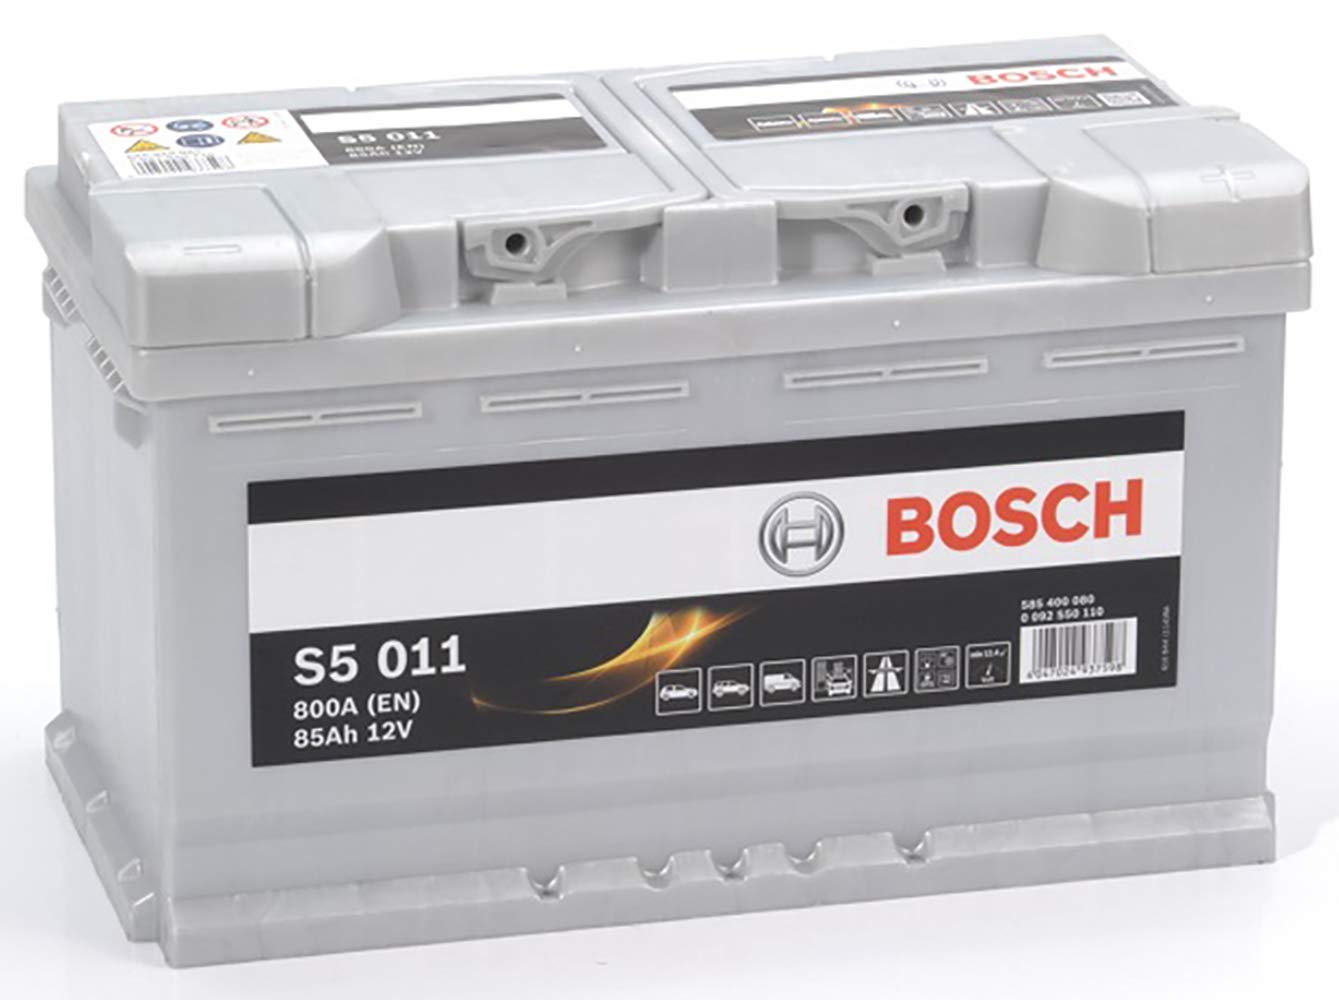 Bosch S5011 - Autobatterie - 85A/h - 800A - Blei-Säure-Technologie - für Fahrzeuge ohne Start-Stopp-System von Bosch Automotive